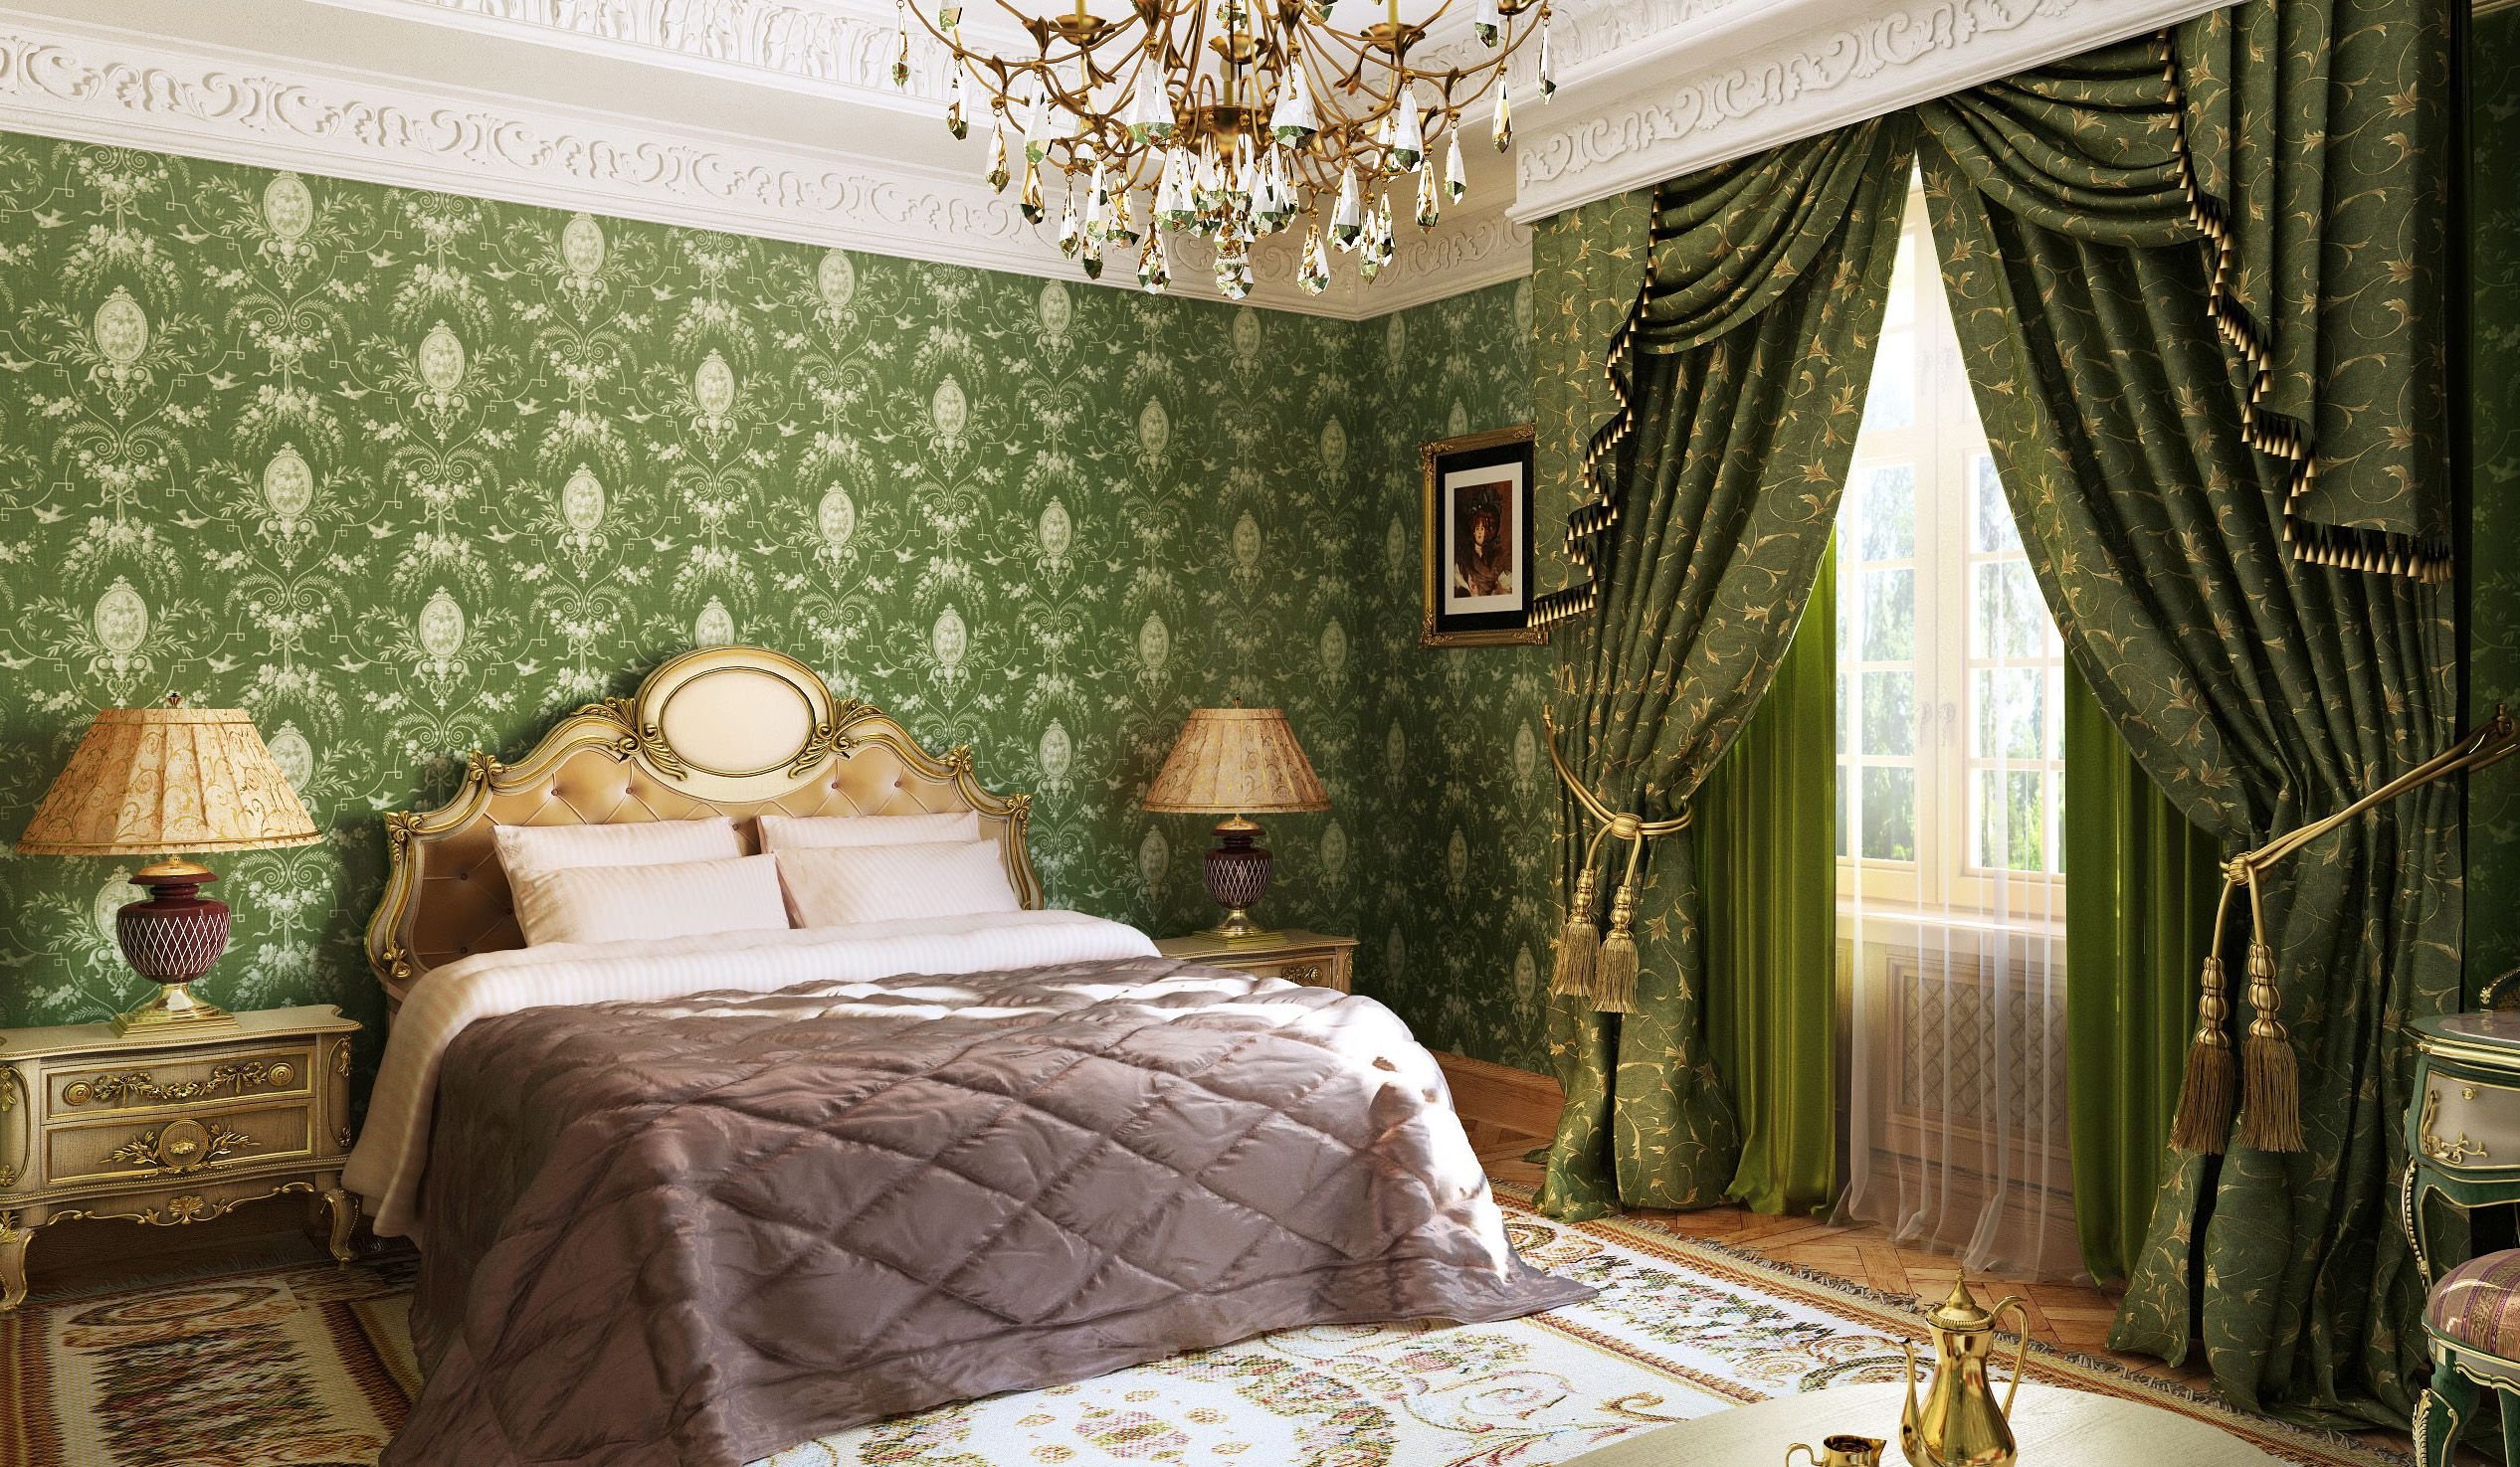 Обои в зеленых тонах. Зеленые обои в спальне. Зеленый с золотом в интерьере. Спальня в английском стиле. Спальня в классическом британском стиле зеленая.